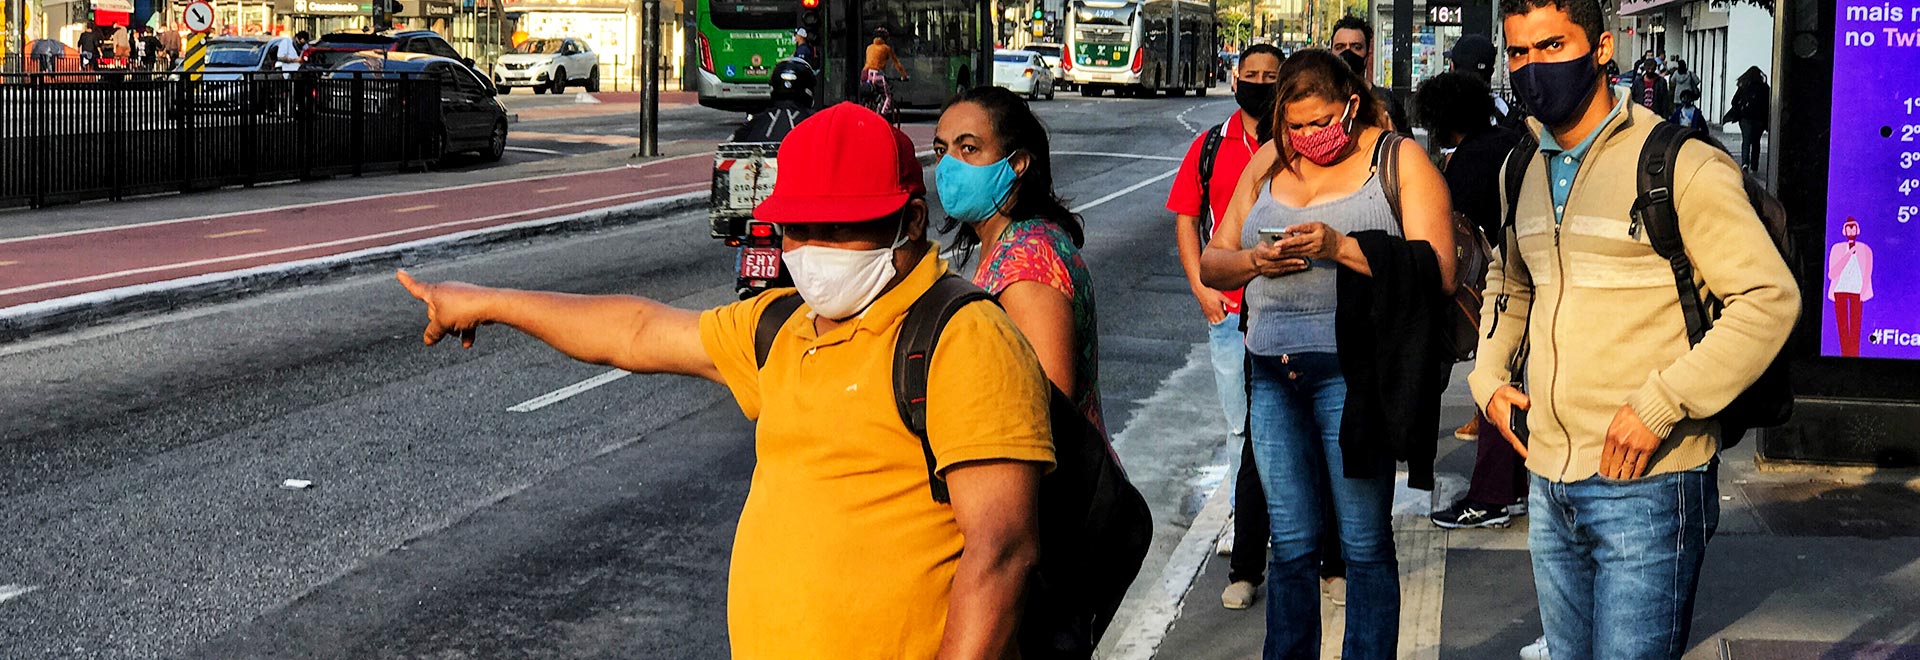 foto mostra pessoas em um ponto de ônibus na avenida paulista, usando máscaras, com um homem fazendo sinal para o ônibus